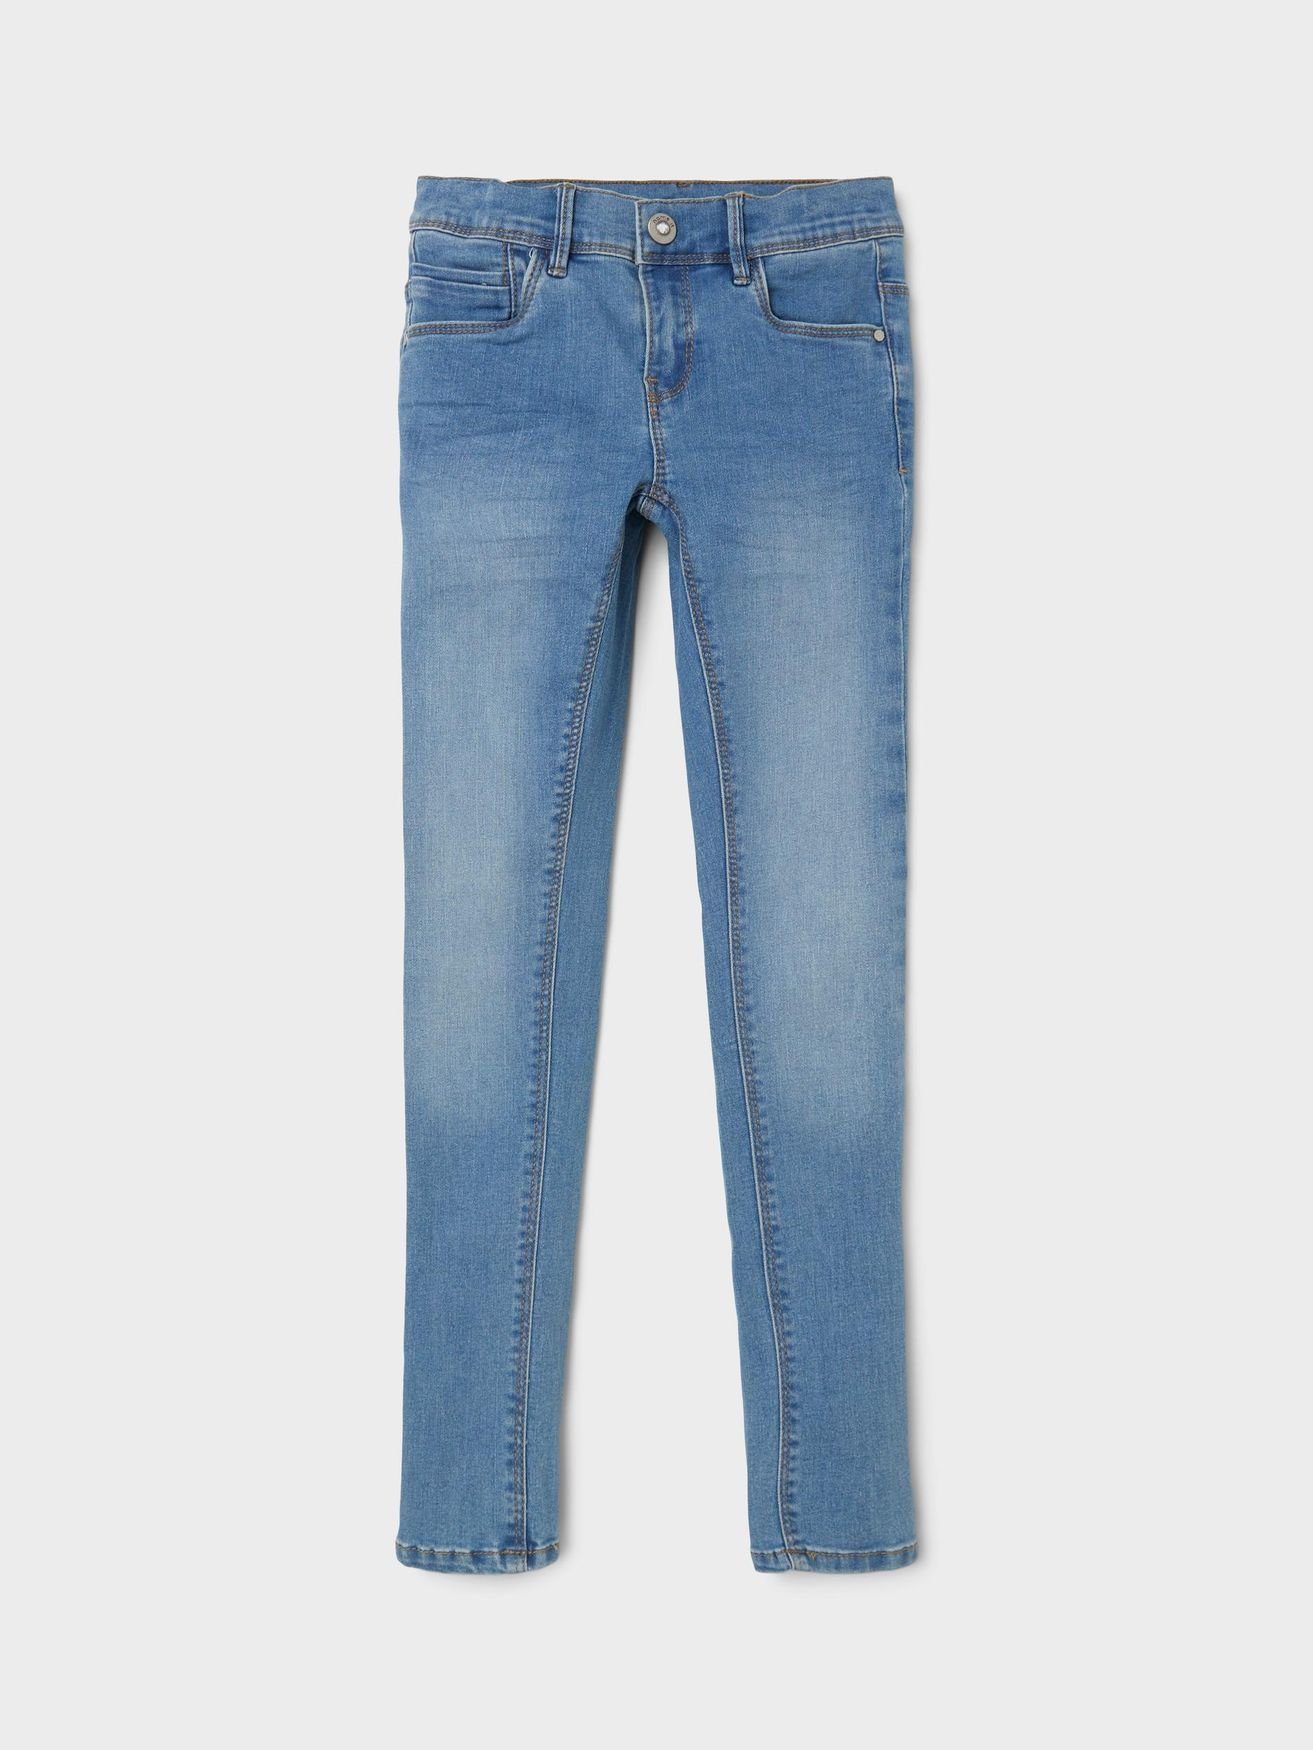 It Denim Regular-fit-Jeans Skinny Hellblau in Name NKFPOLLY Jeans Hose 5546